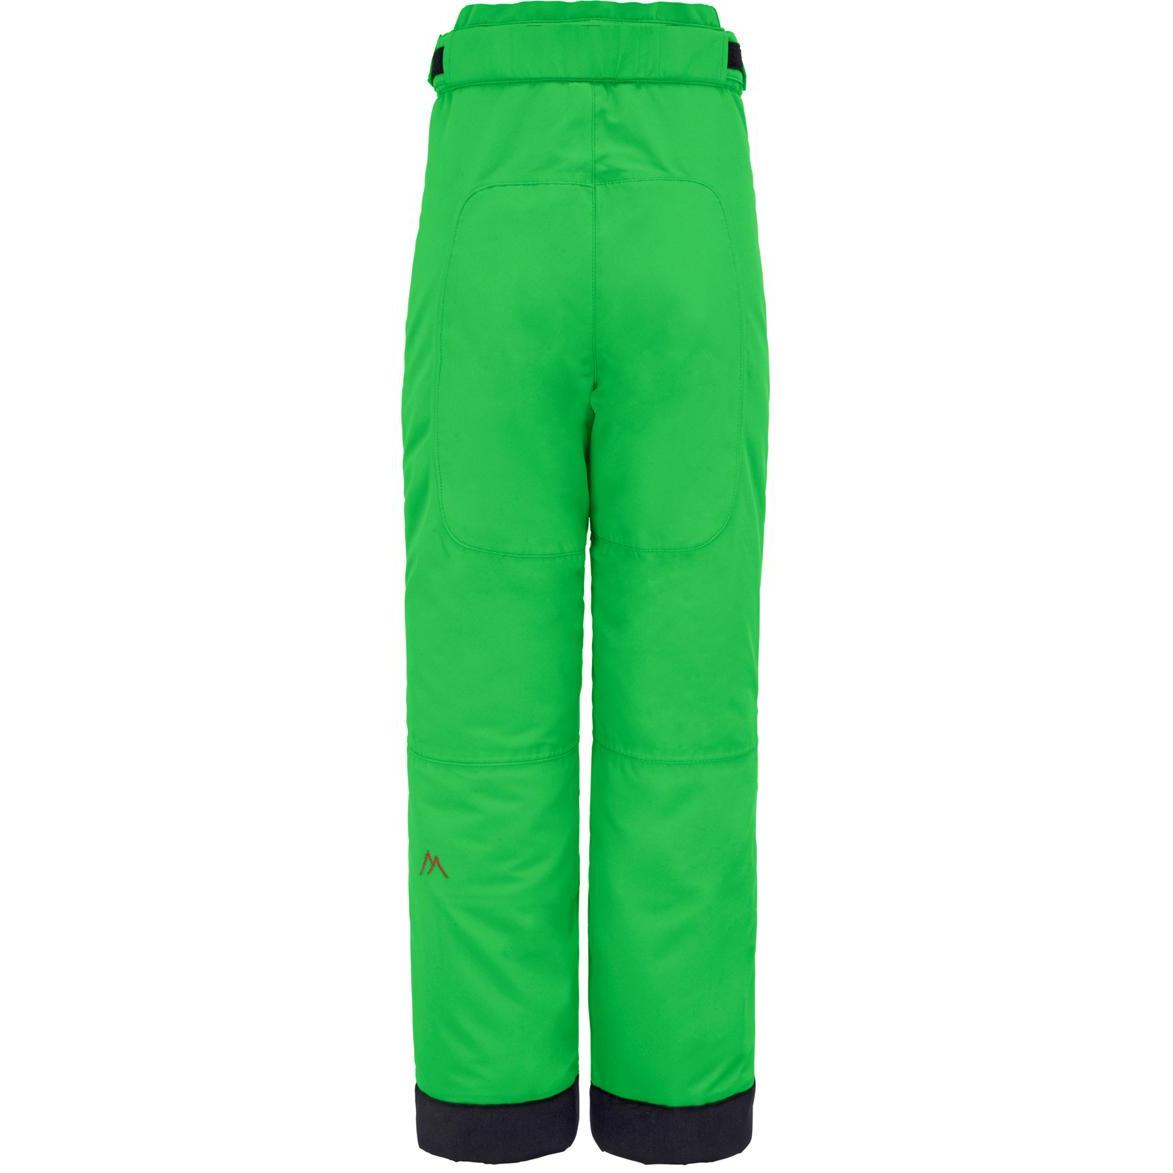 Брюки горнолыжные MAIER 06--16 Maxi SLIM classic green (зелёный)